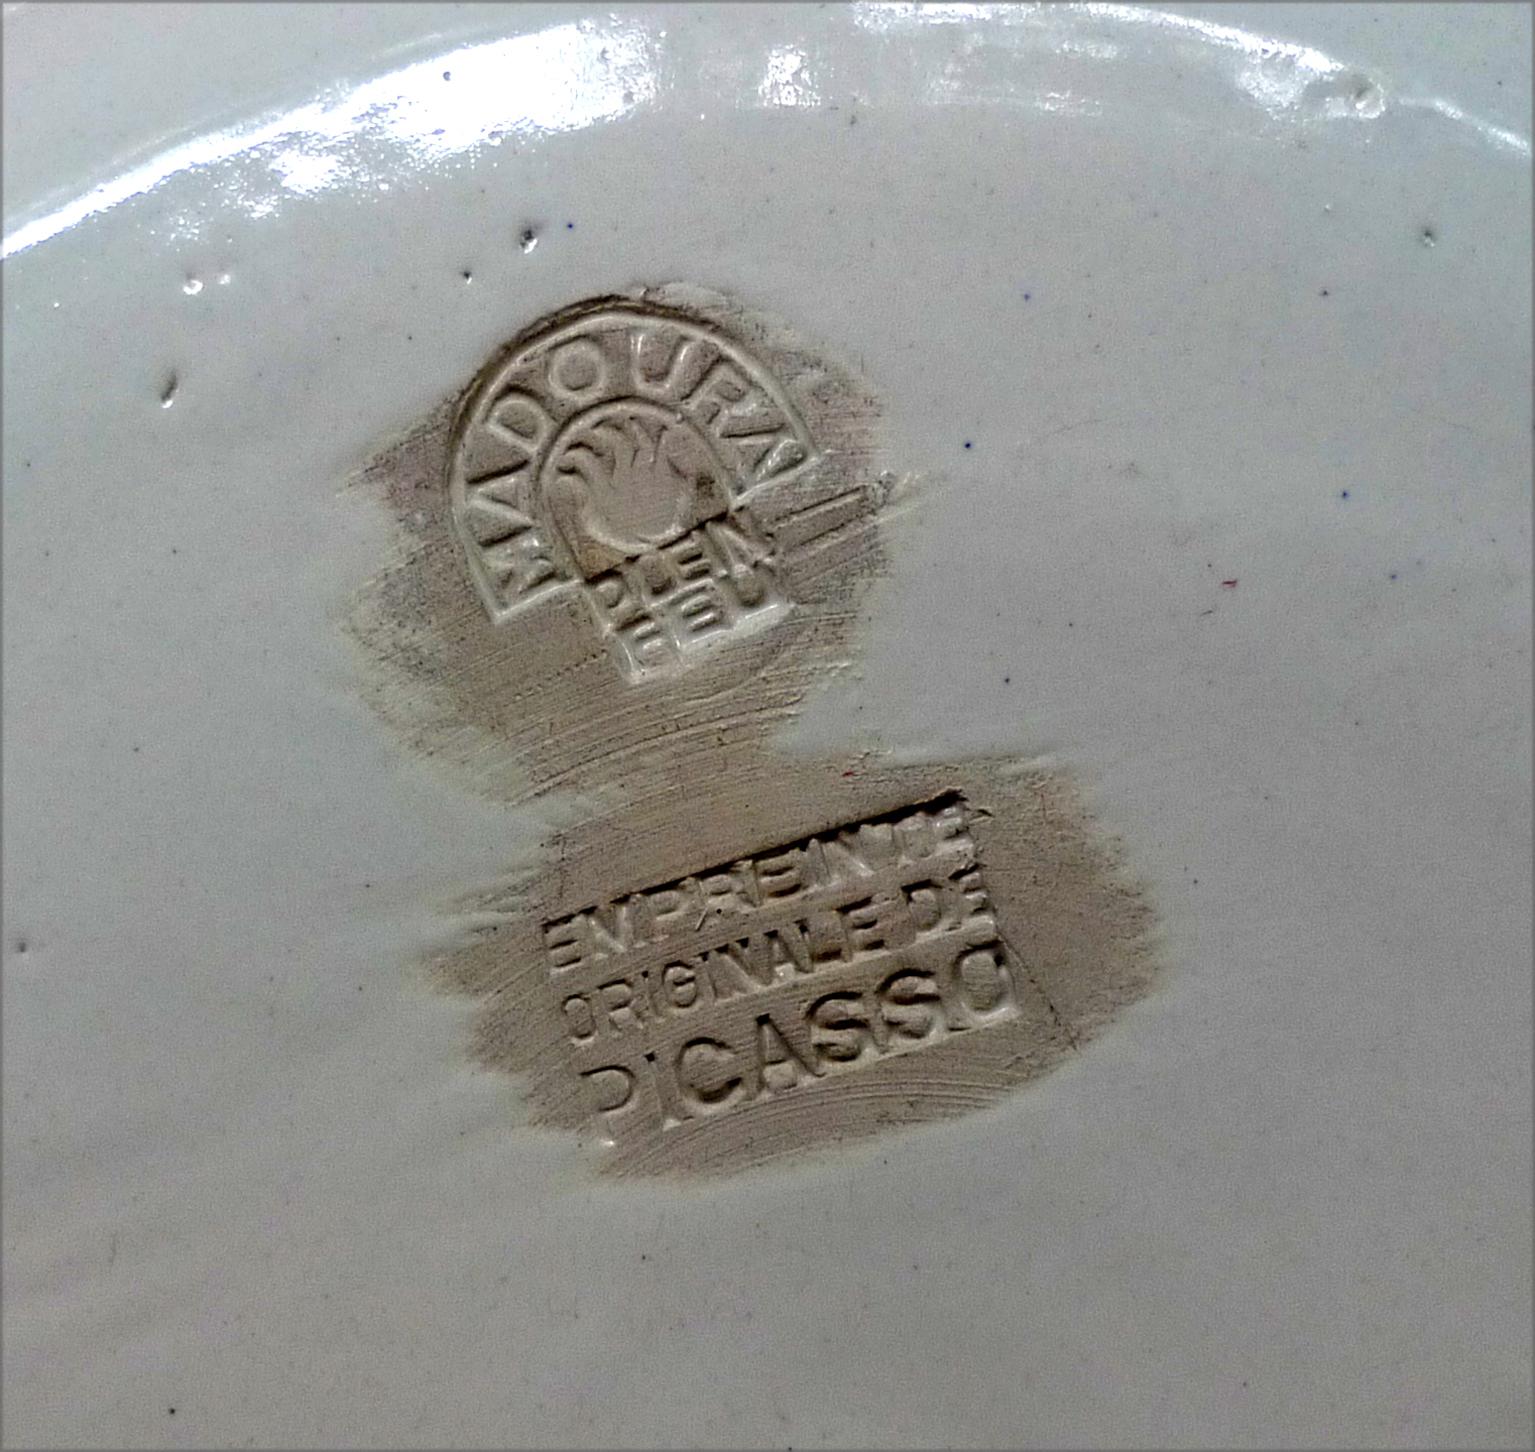 PABLO PICASSO (1881-1973)
QUATRE PROFILS ENLACÉS (A.R. 88)
gestempelt 'Madoura Plein Feu / Empreinte Originale de Picasso' (unten)
teller aus weißer Steingutkeramik mit schwarzem Oxid und weißer Glasur
Durchmesser: 10-5/8 Zoll (27 cm)
Konzipiert